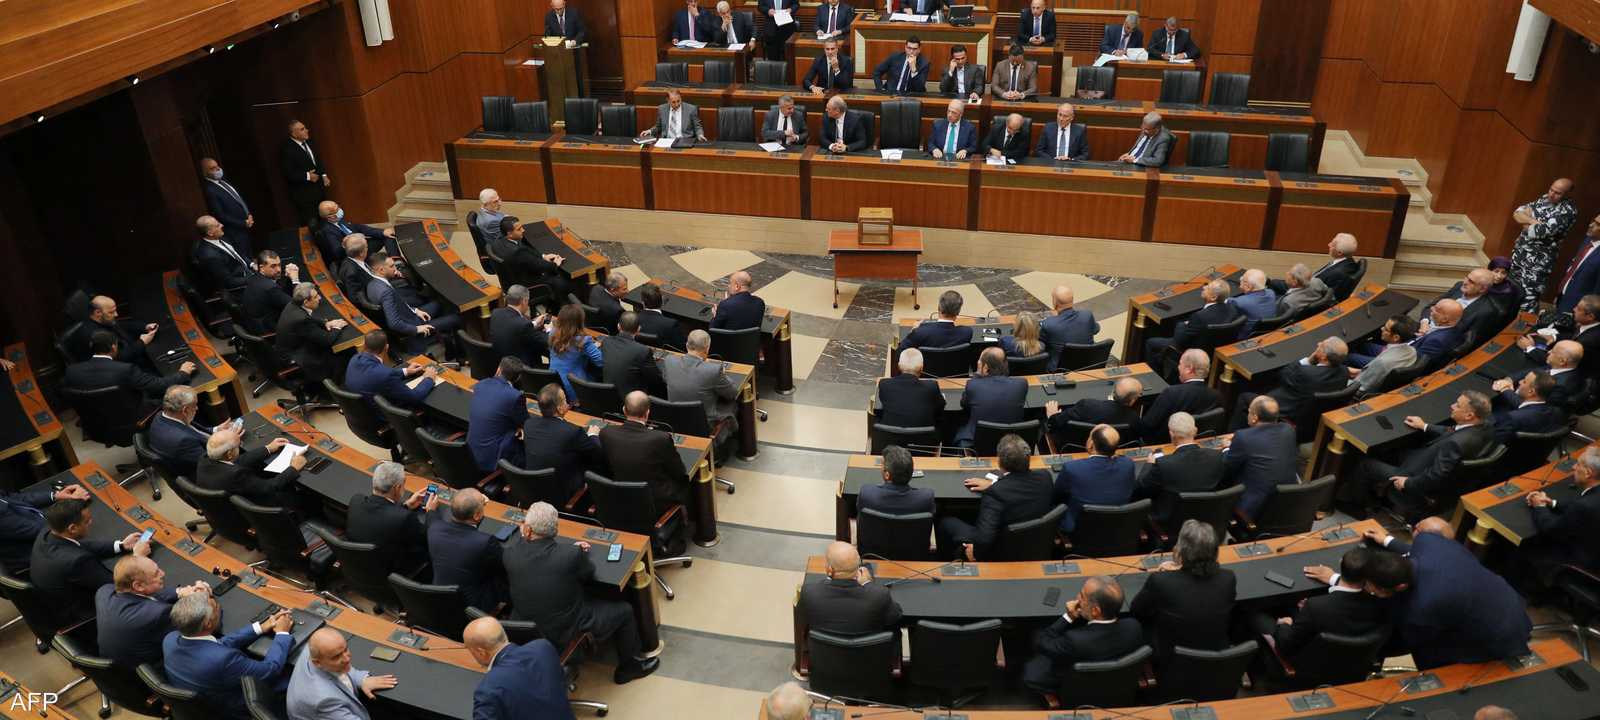 مخاوف من عودة حالة "الفراغ الرئاسي" في لبنان